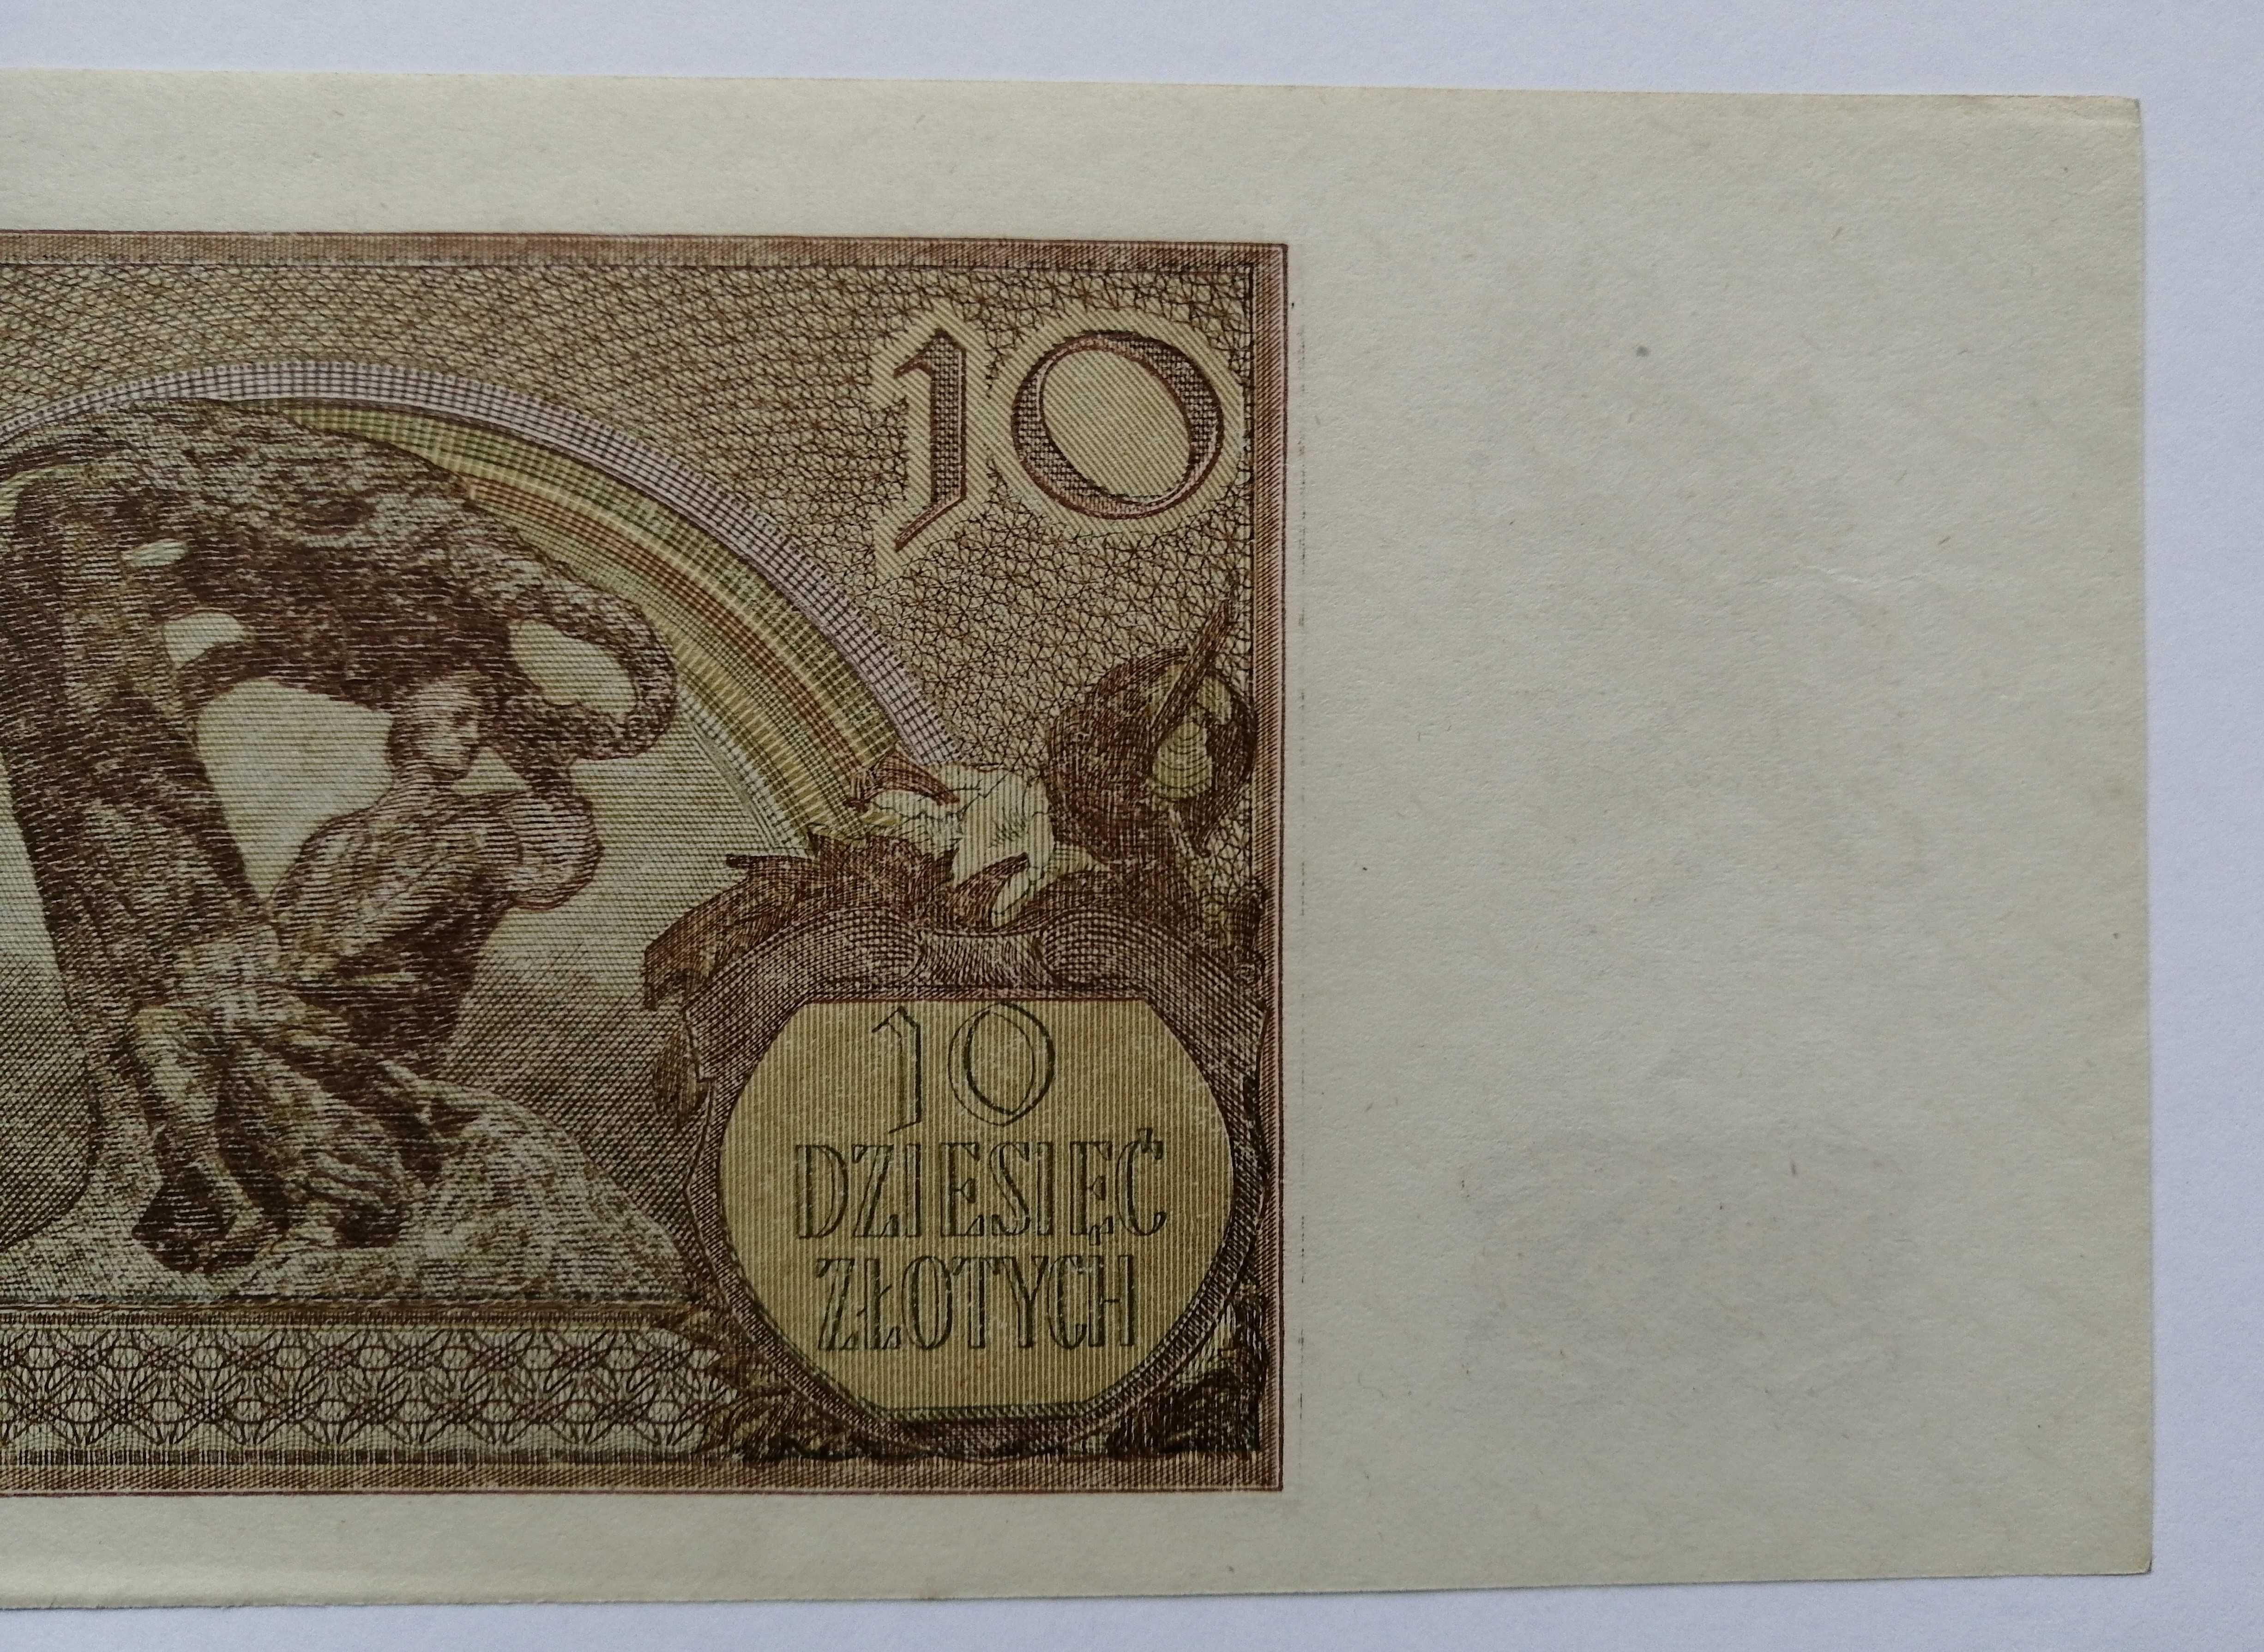 Banknot Polska - 10 złotych - 1940 rok.Ser. J ( z paczki bankowej )